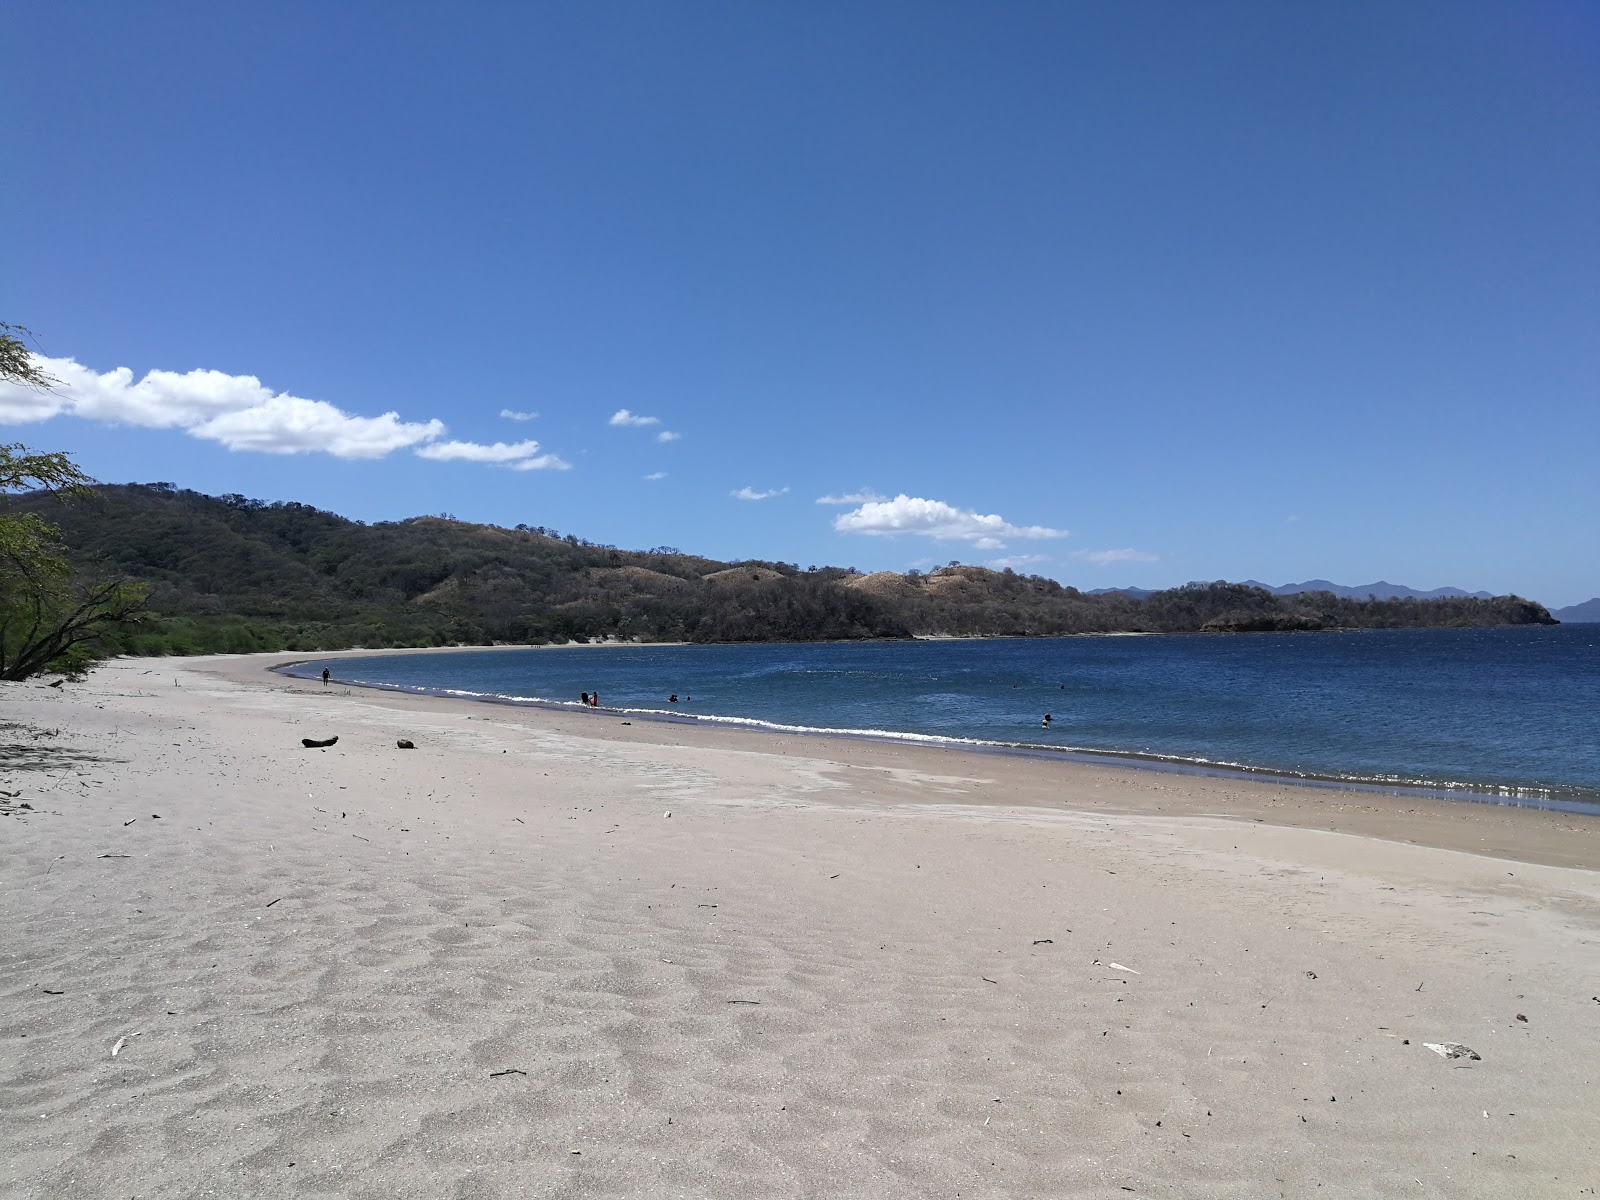 Junquillal beach'in fotoğrafı parlak kum yüzey ile